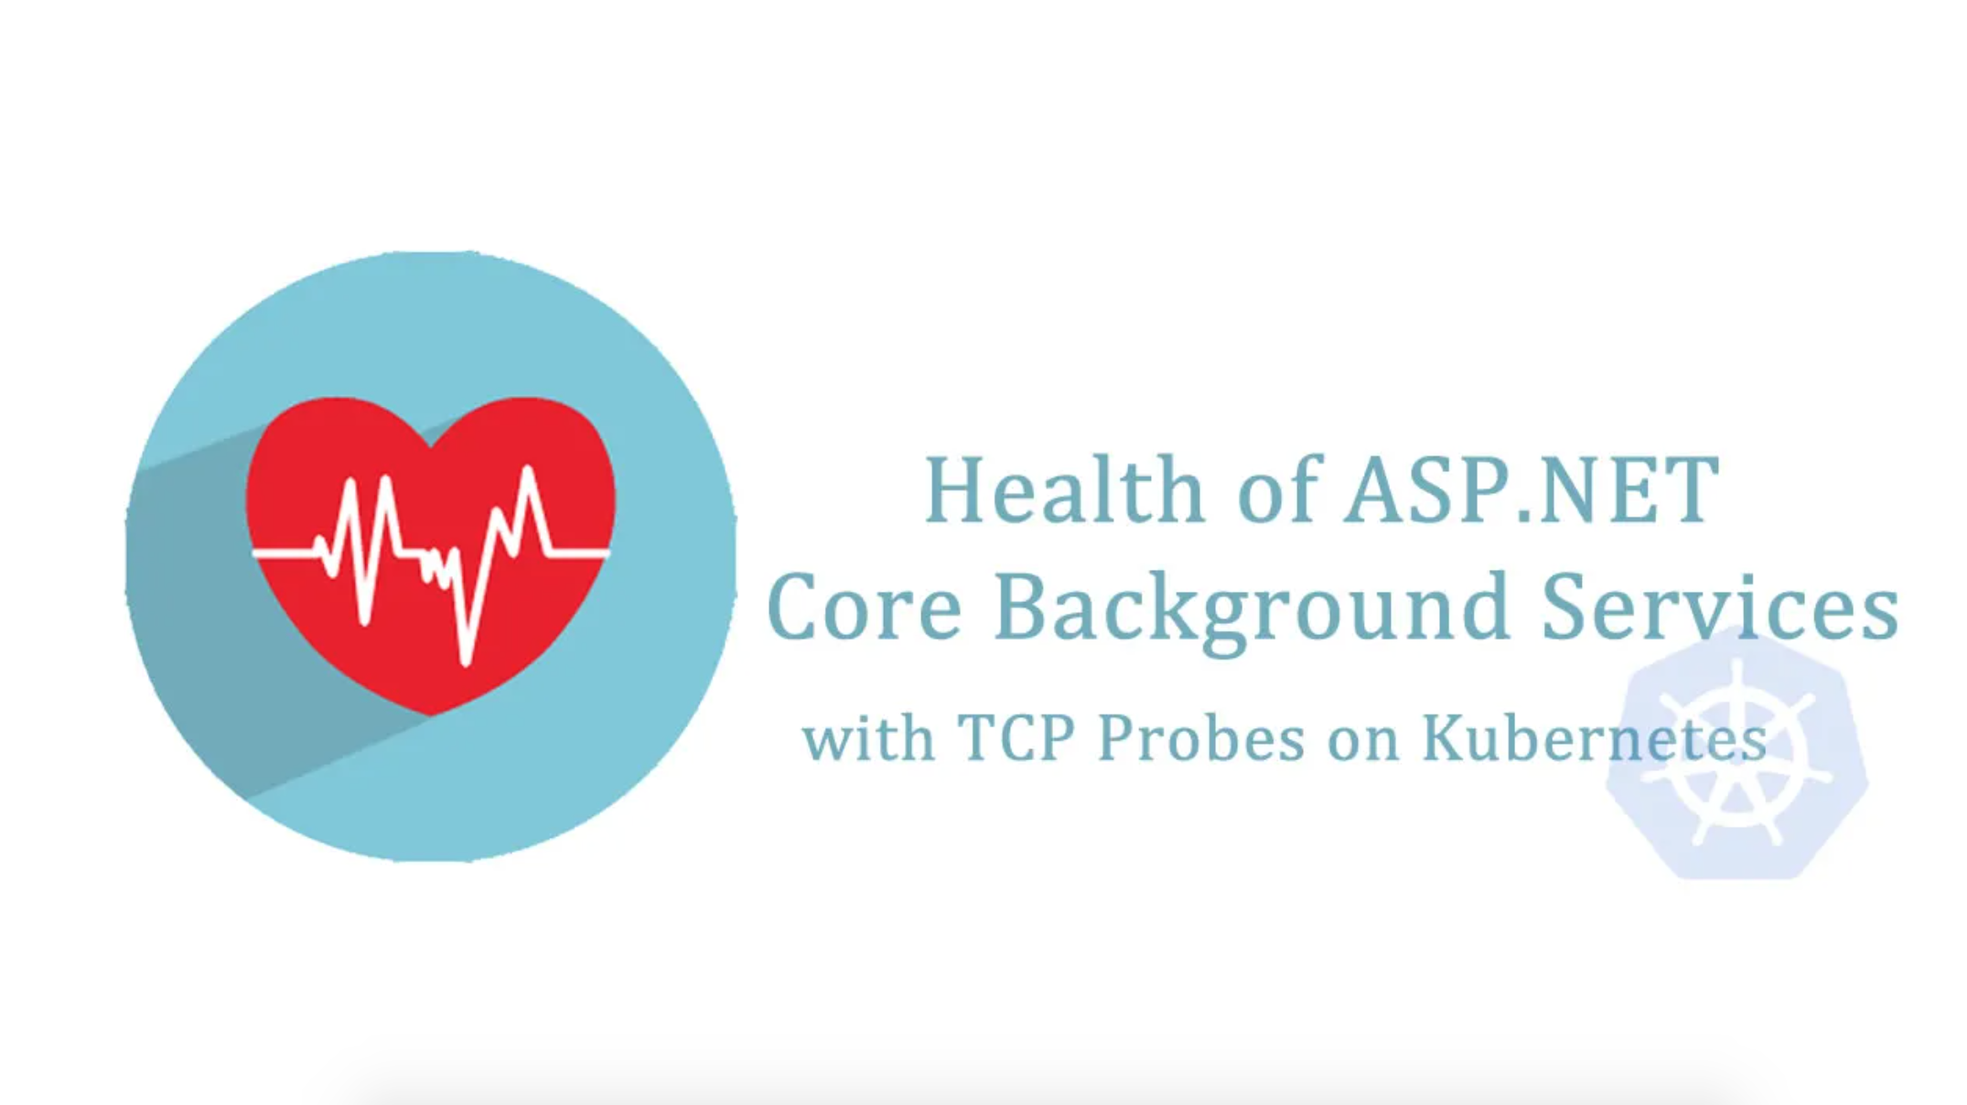 Hướng dẫn theo dõi dịch vụ cốt lõi ASP.NET với TCP Probes trên Kubernetes